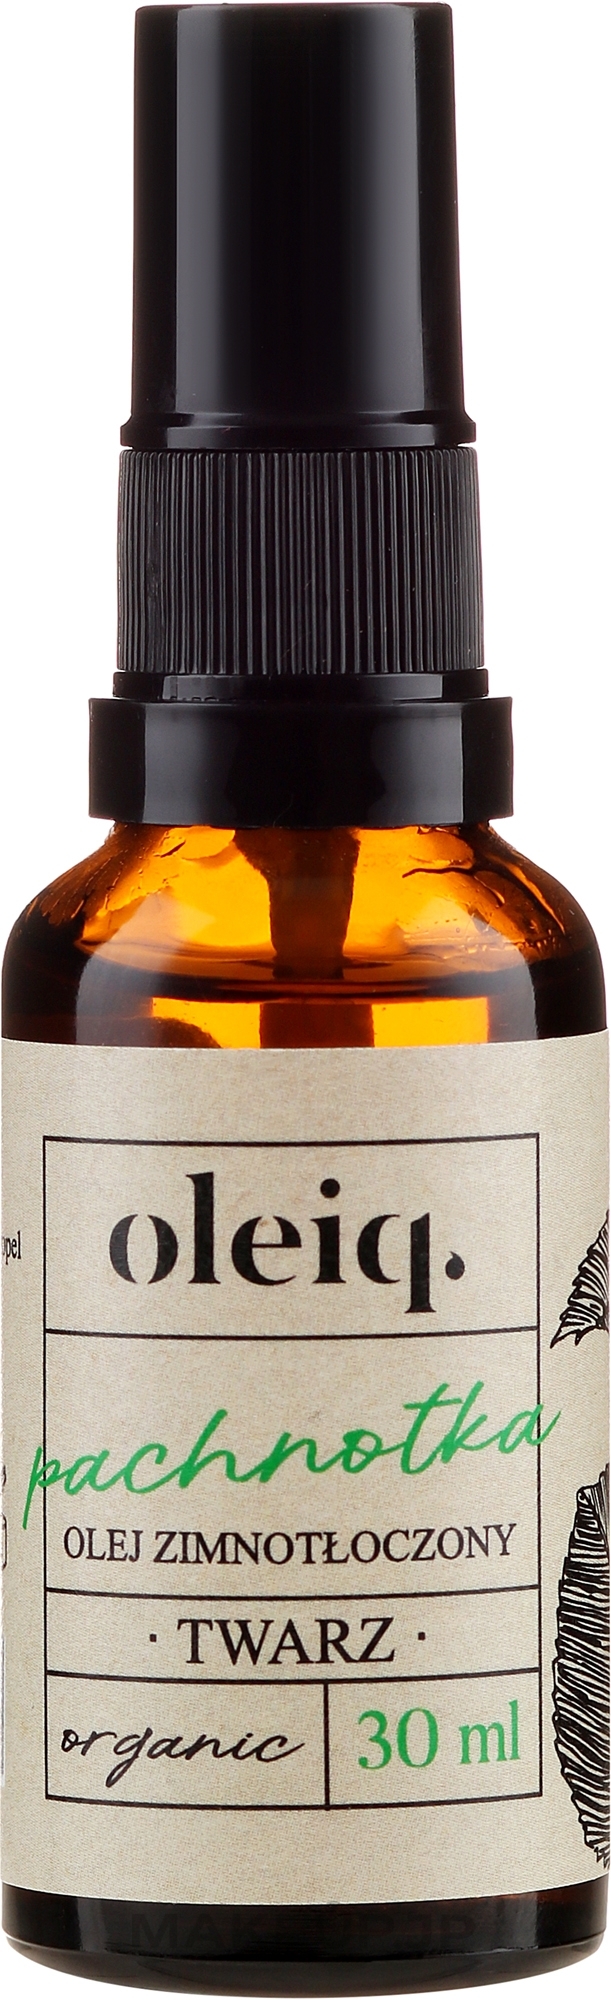 Perilla Face Oil - Oleiq Perilla Face Oil — photo 30 ml